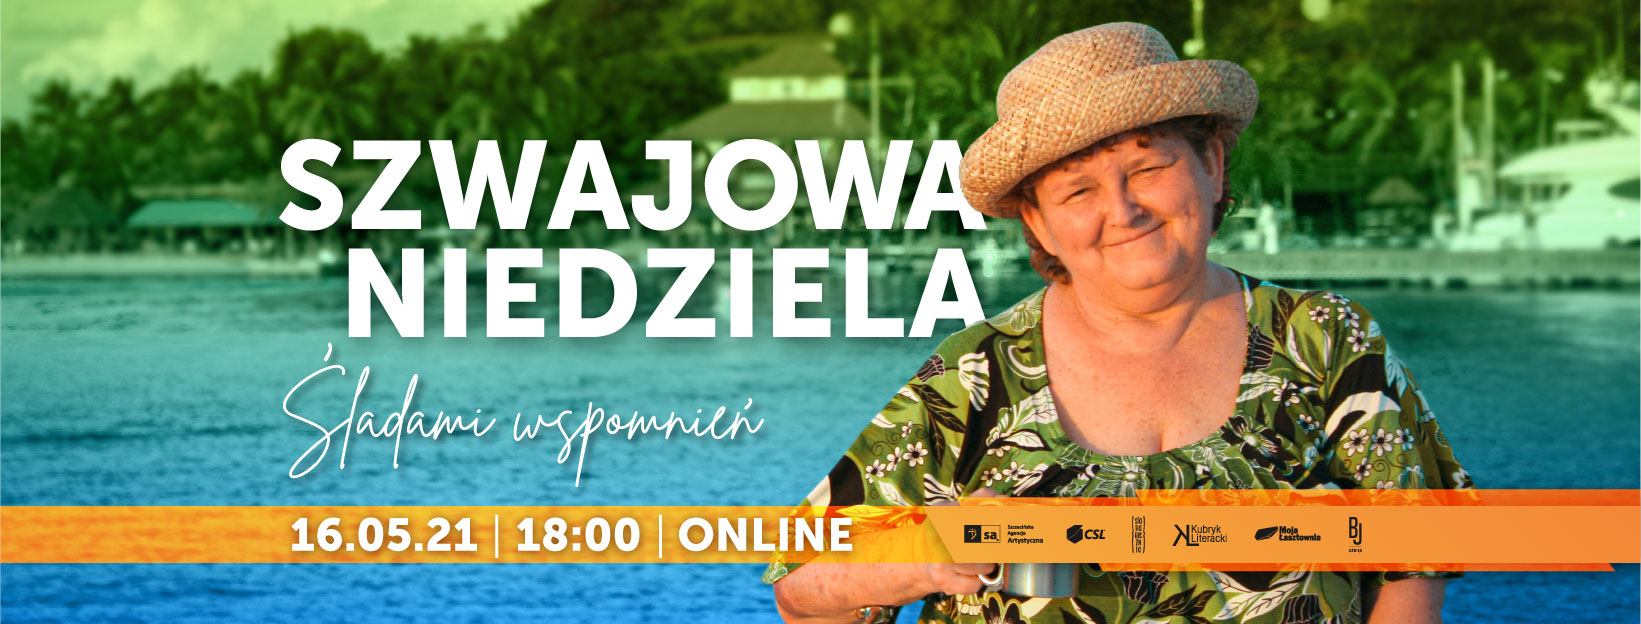 CKE Stara Rzeźnia - Kolejna Szwajowa Niedziela Online